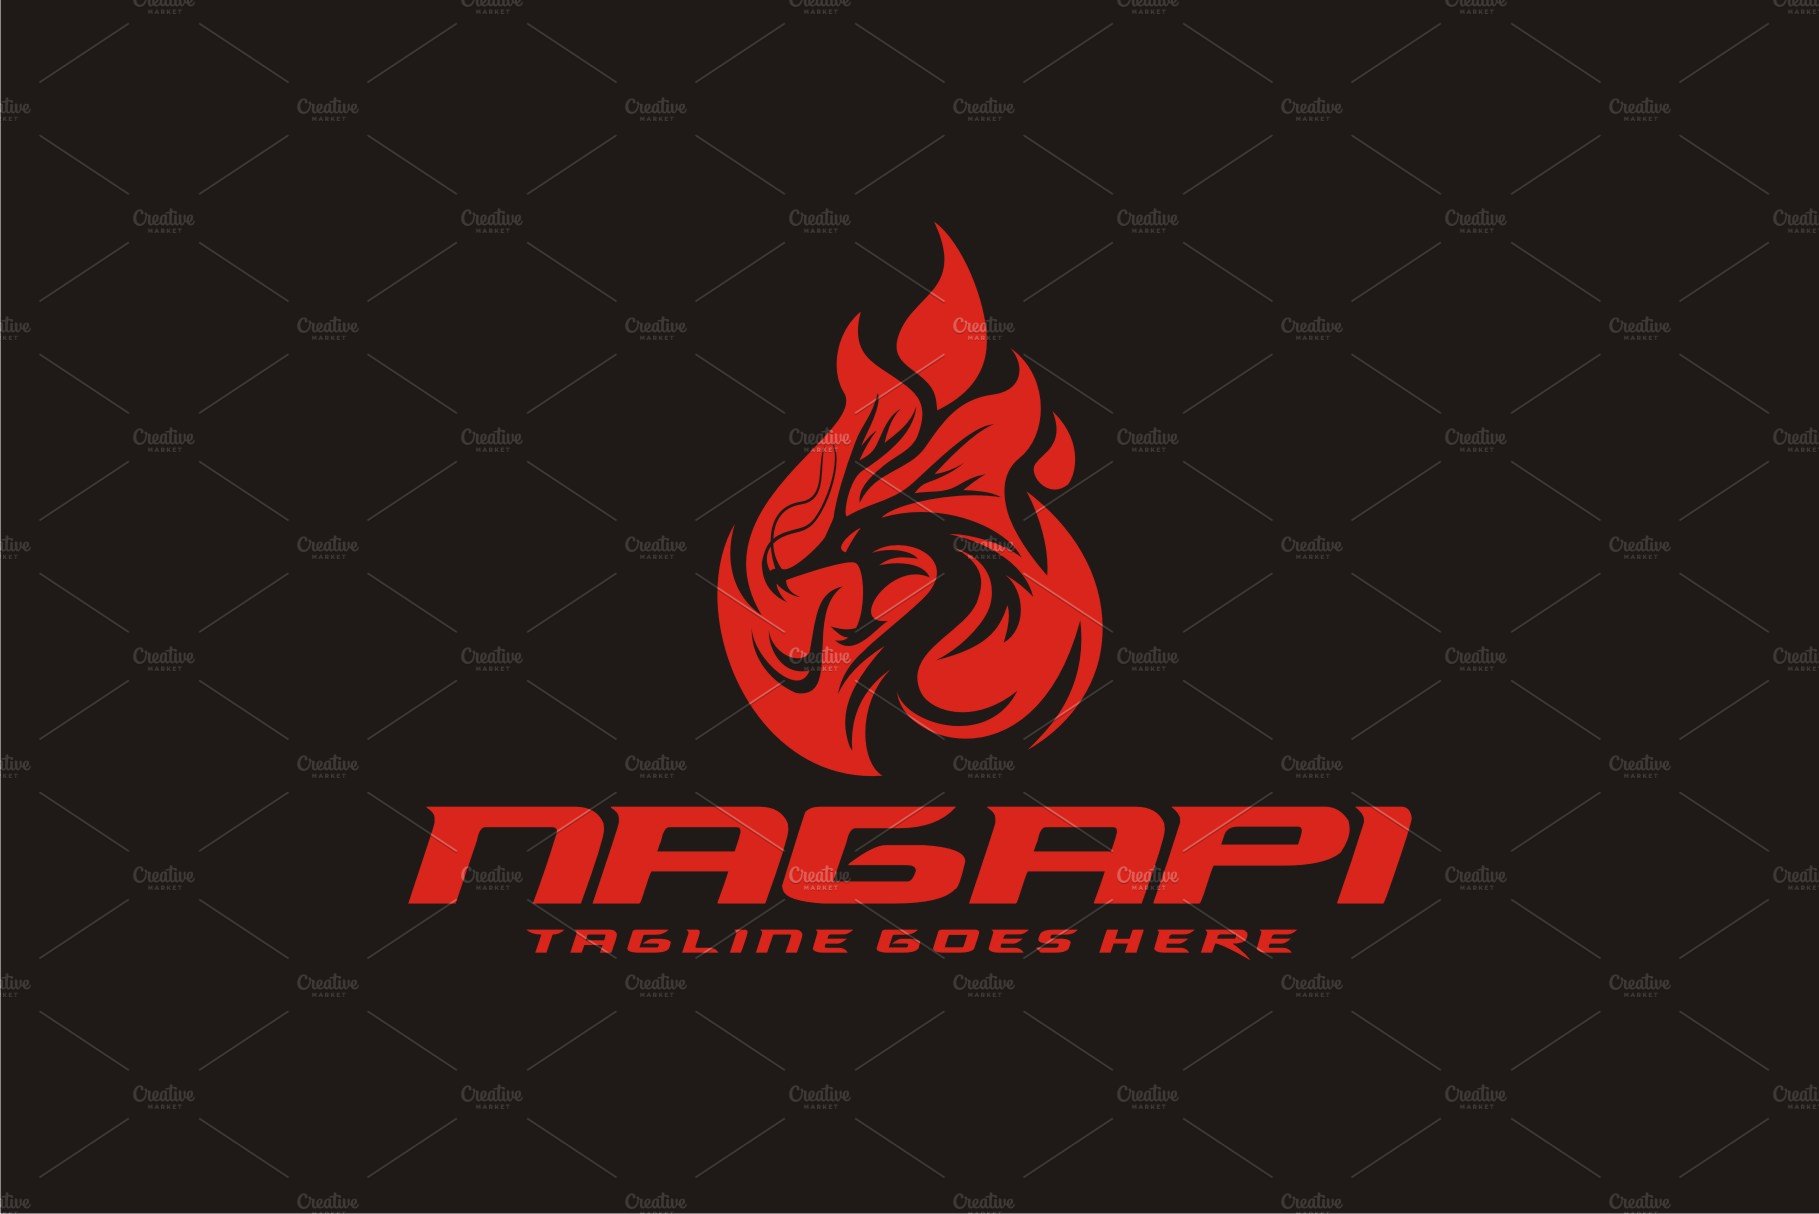 Naga Api preview image.